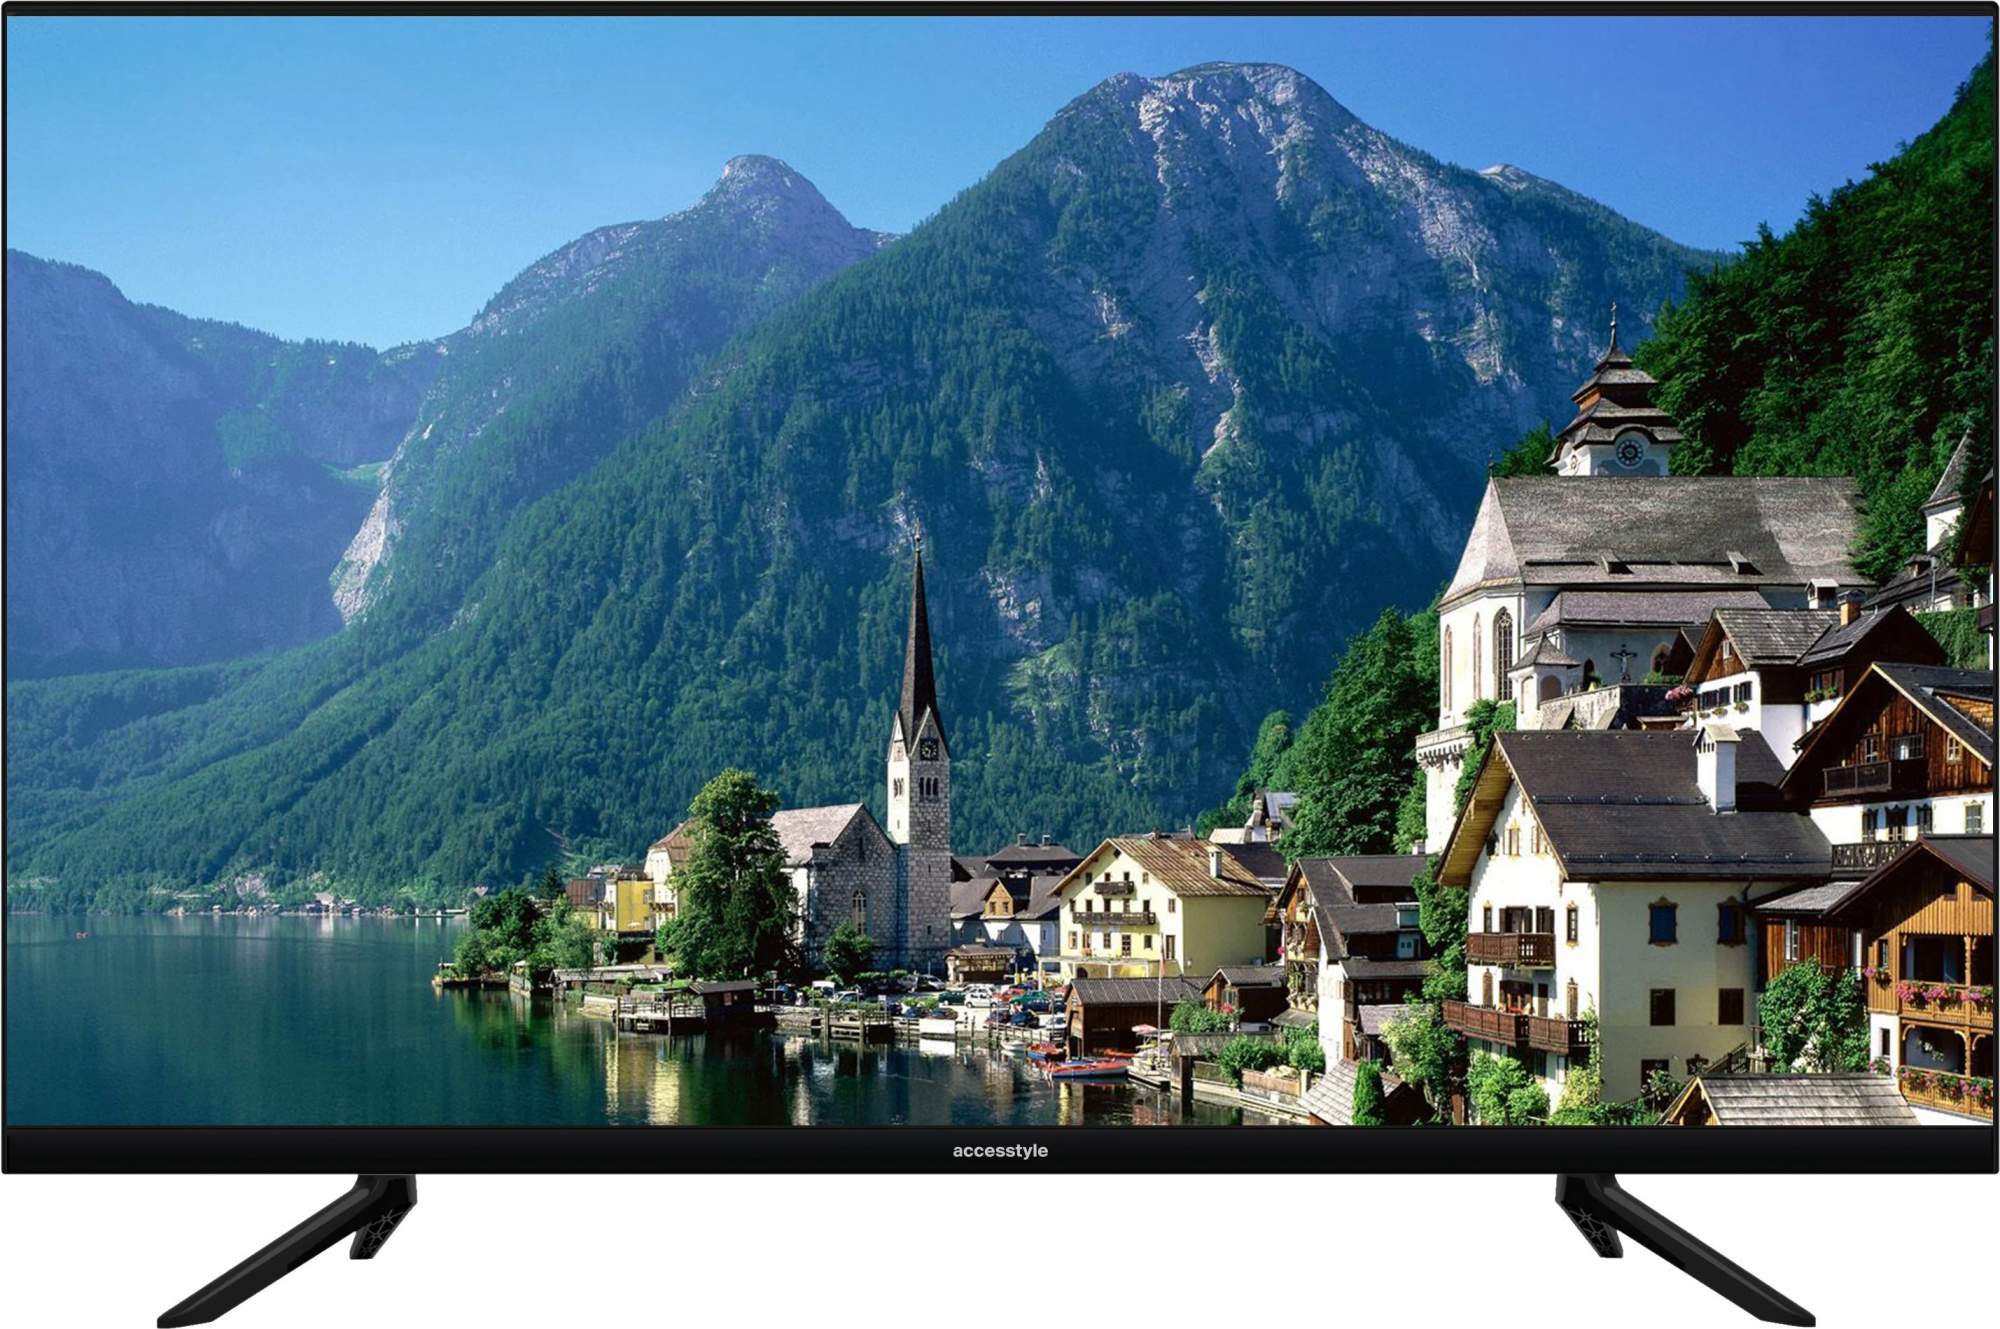 Телевизор Accesstyle H32EY1500B, 32"(81 см), HD, купить в Москве, цены в интернет-магазинах на Мегамаркет